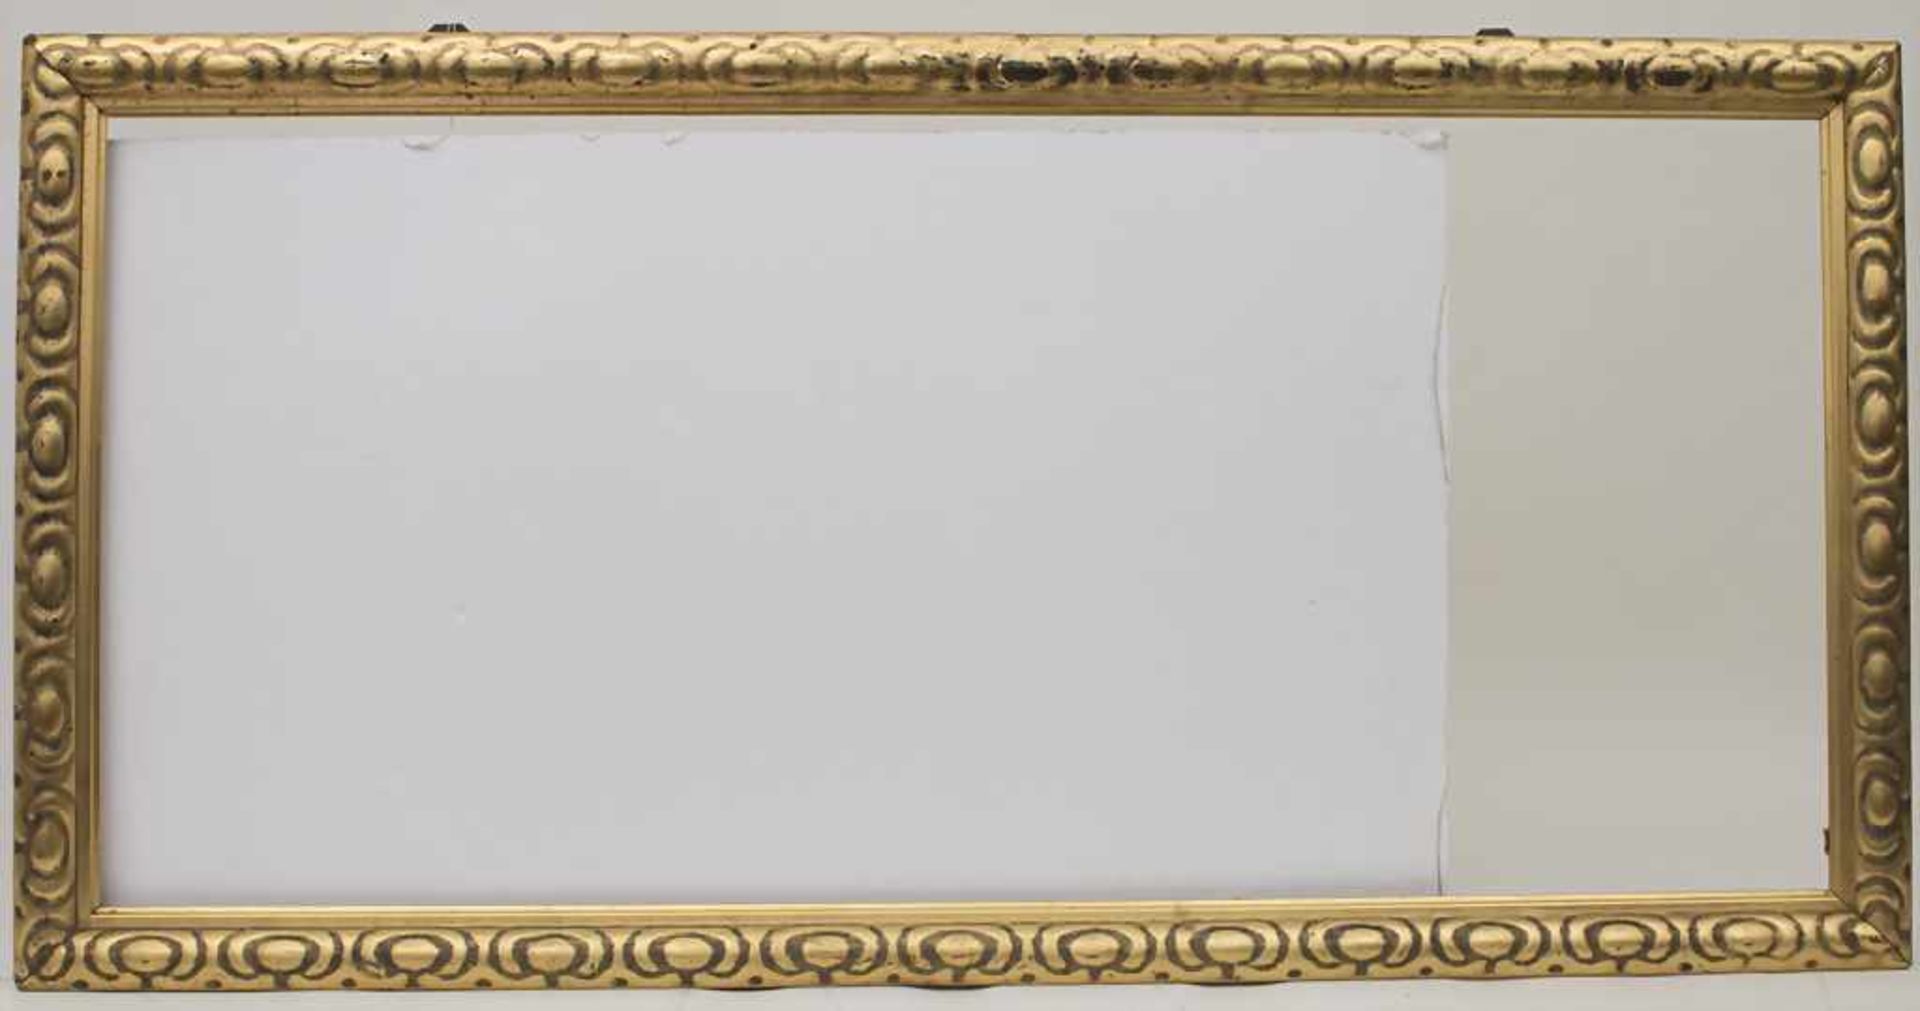 Jugendstil-Rahmen / An Art Nouveau frame